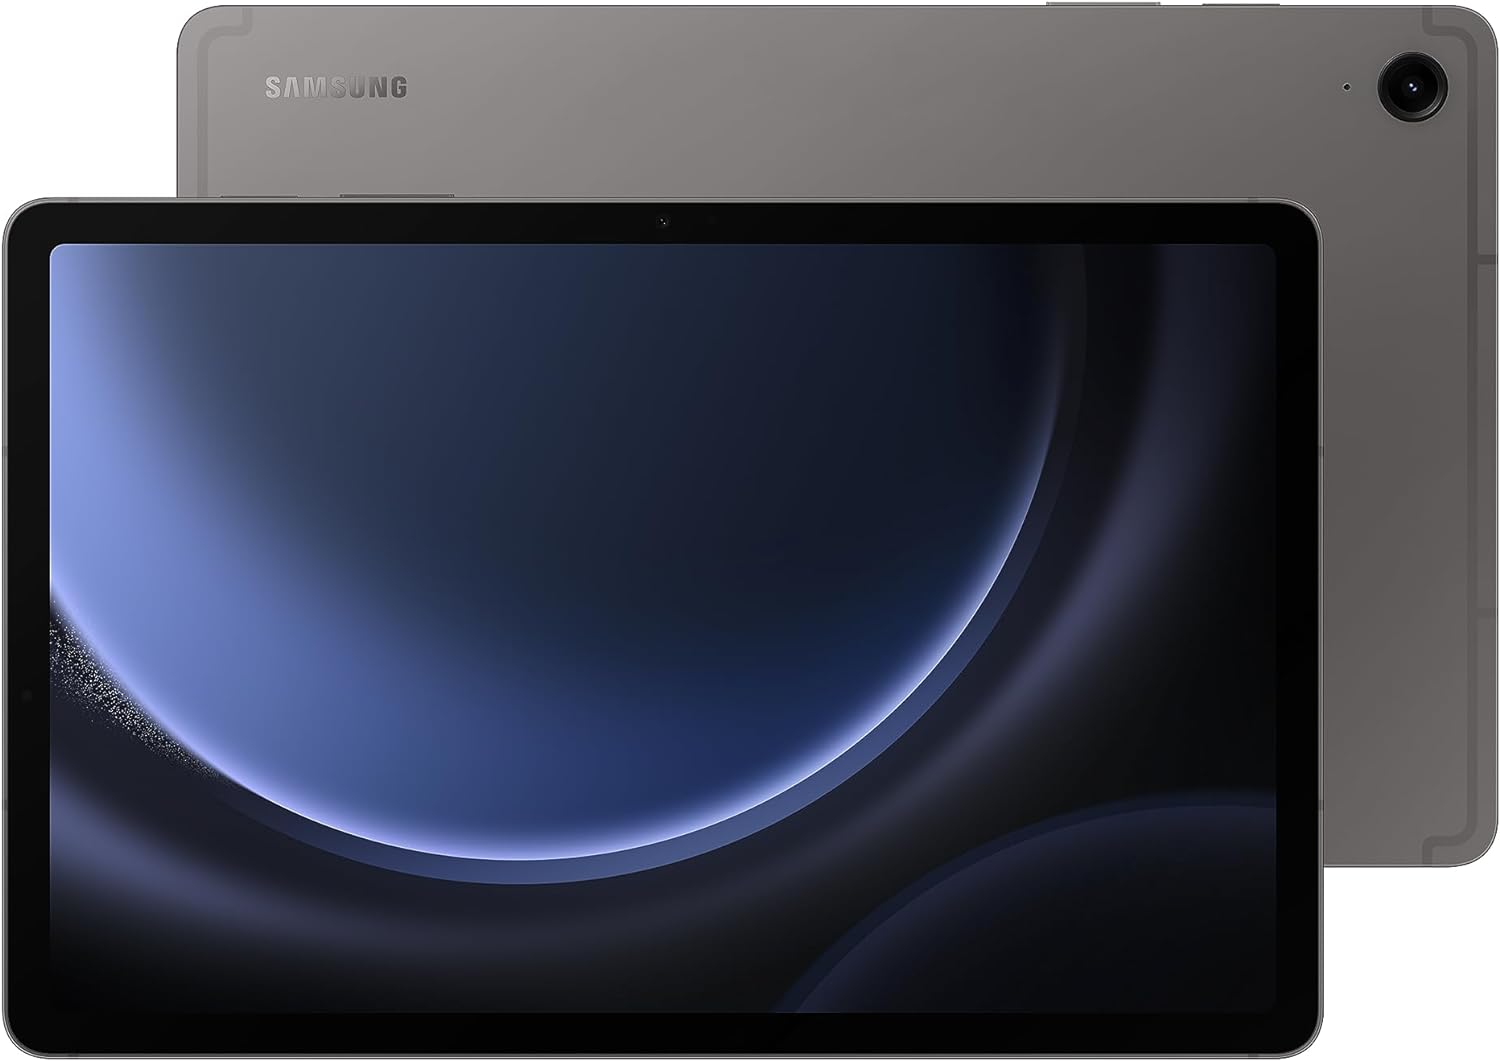 Samsung Galaxy Tab S9 FE 10.9